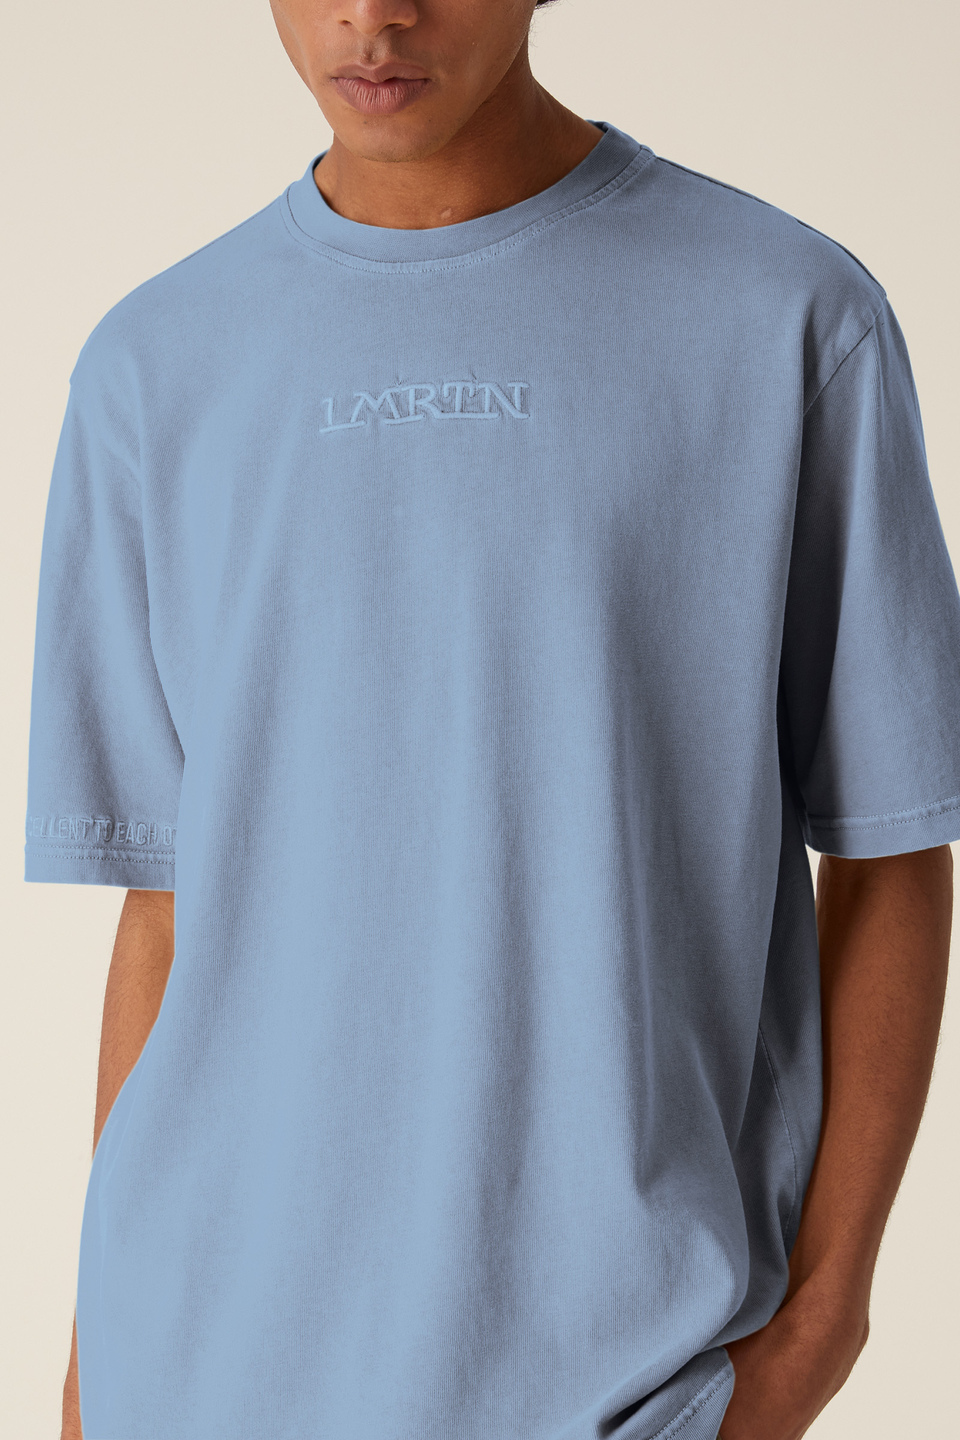 LMRTN-T-Shirt | La Martina - Official Online Shop